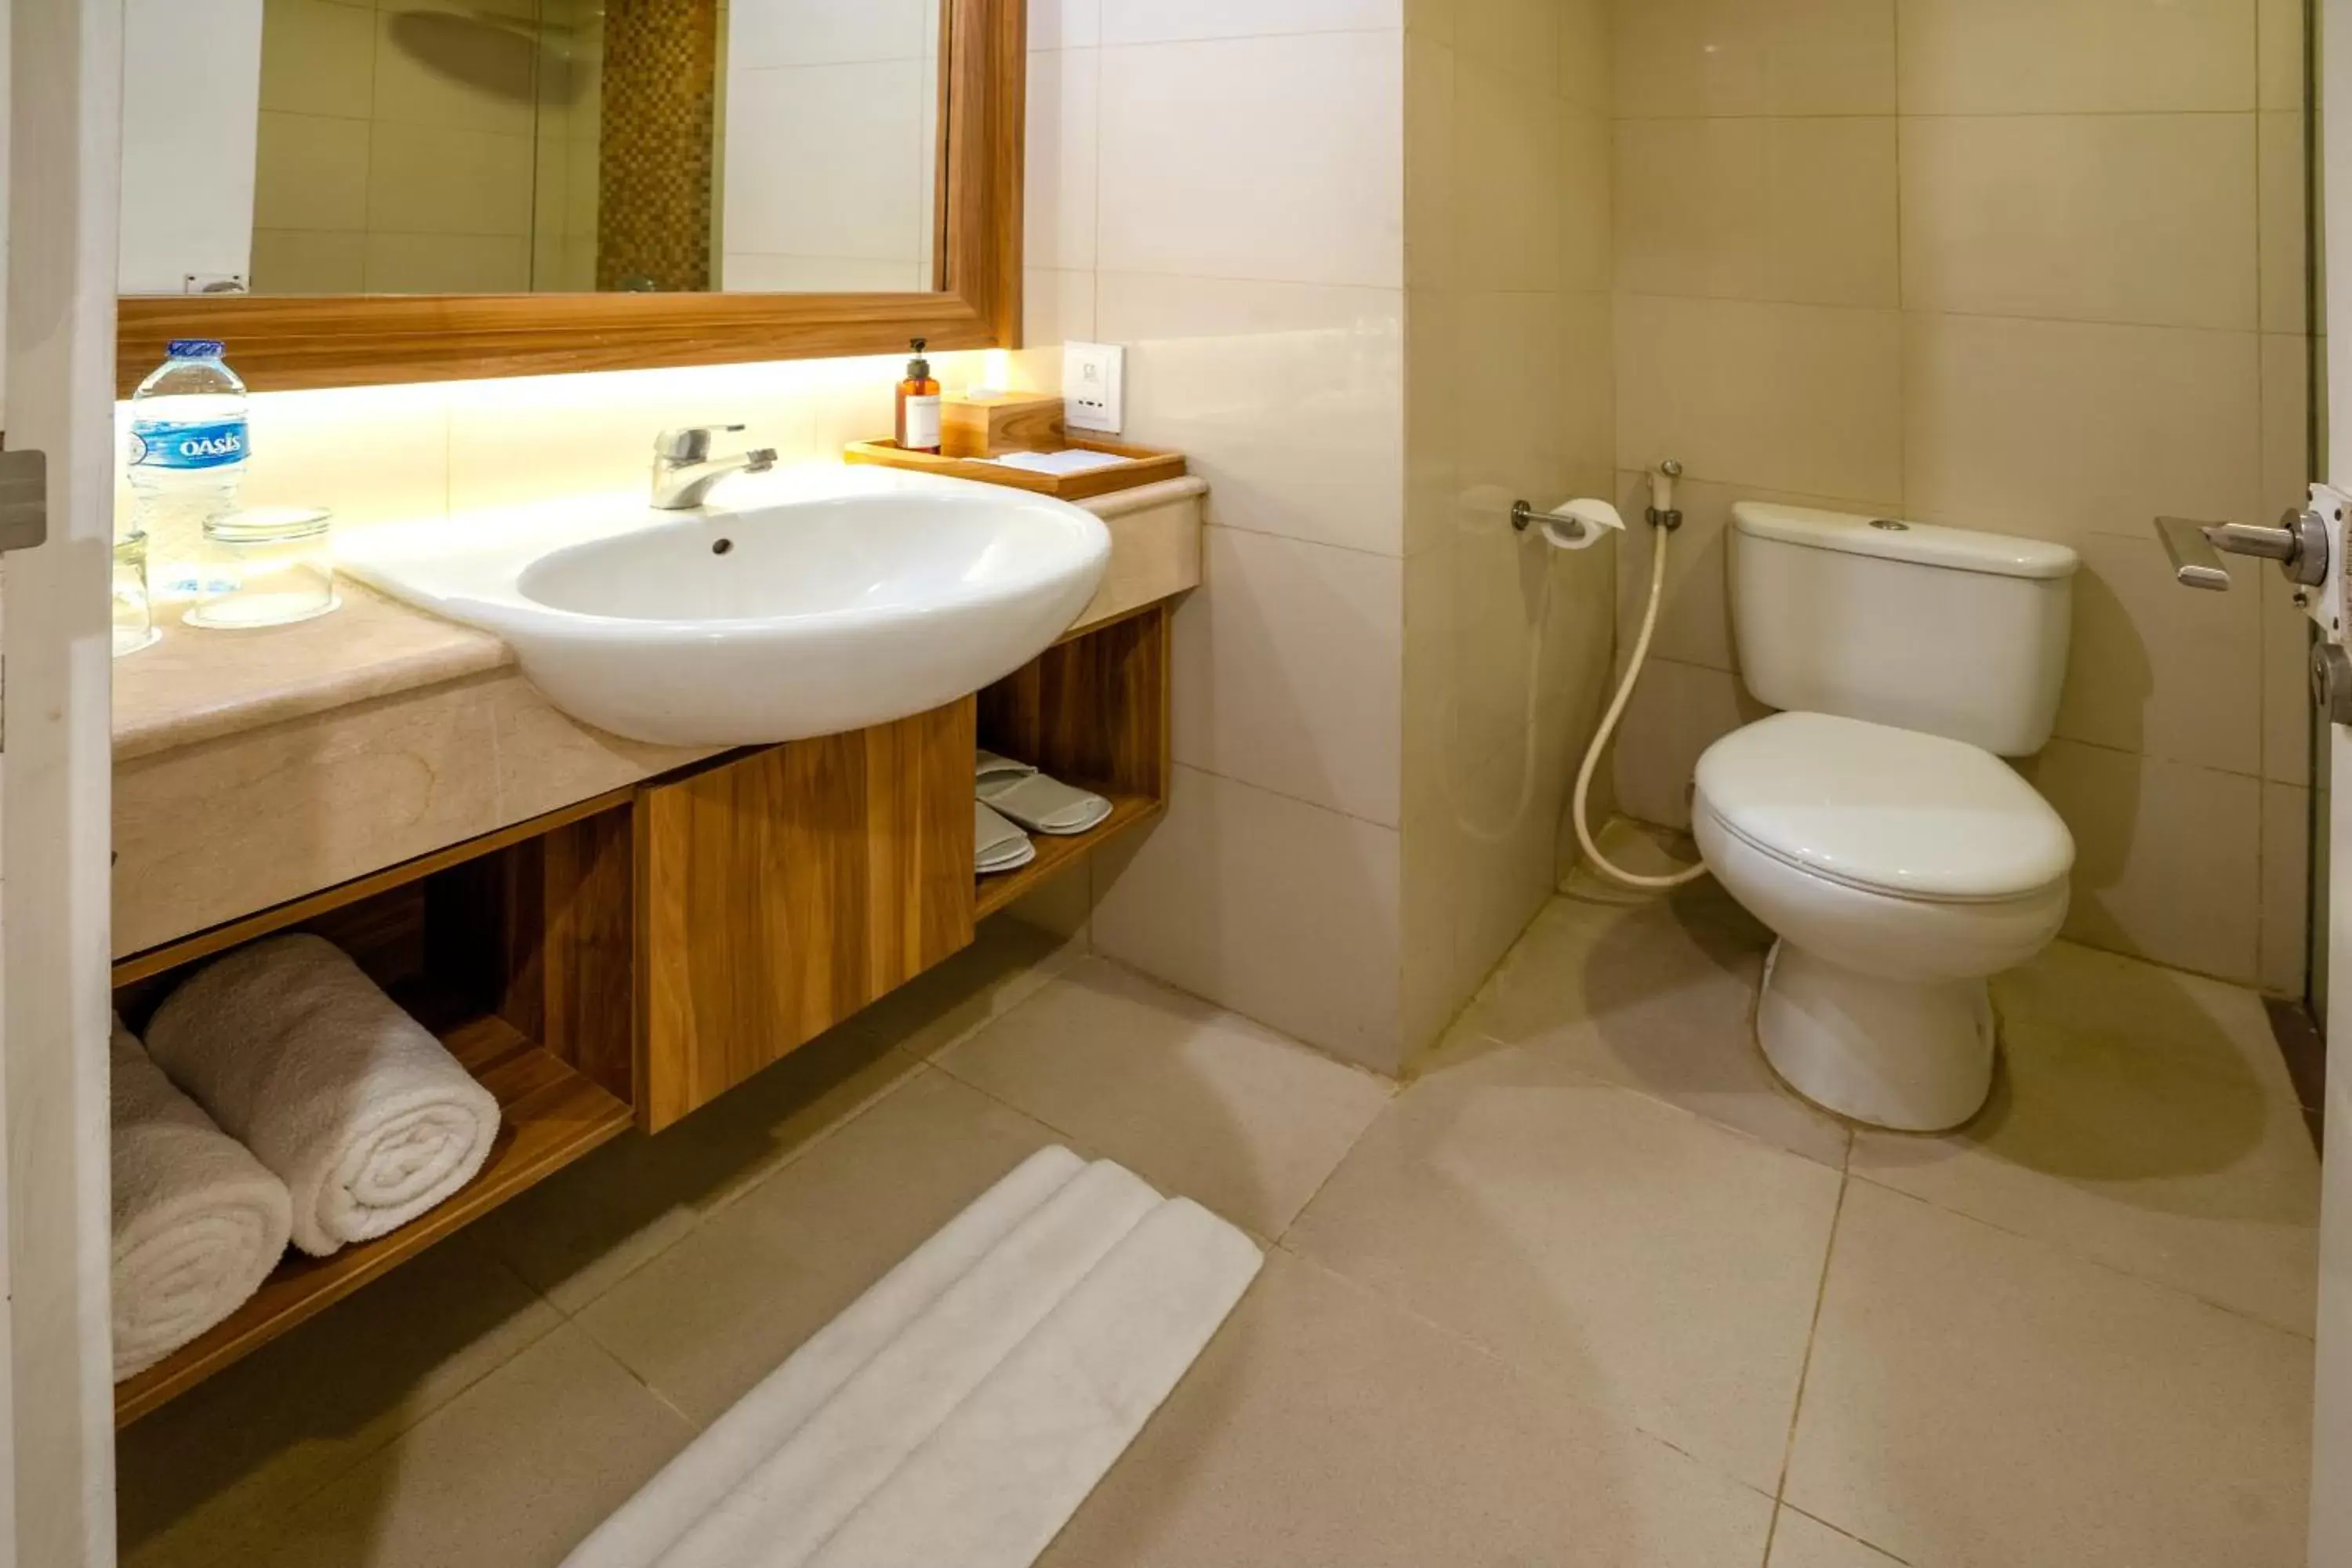 Toilet, Bathroom in Crystalkuta Hotel - Bali